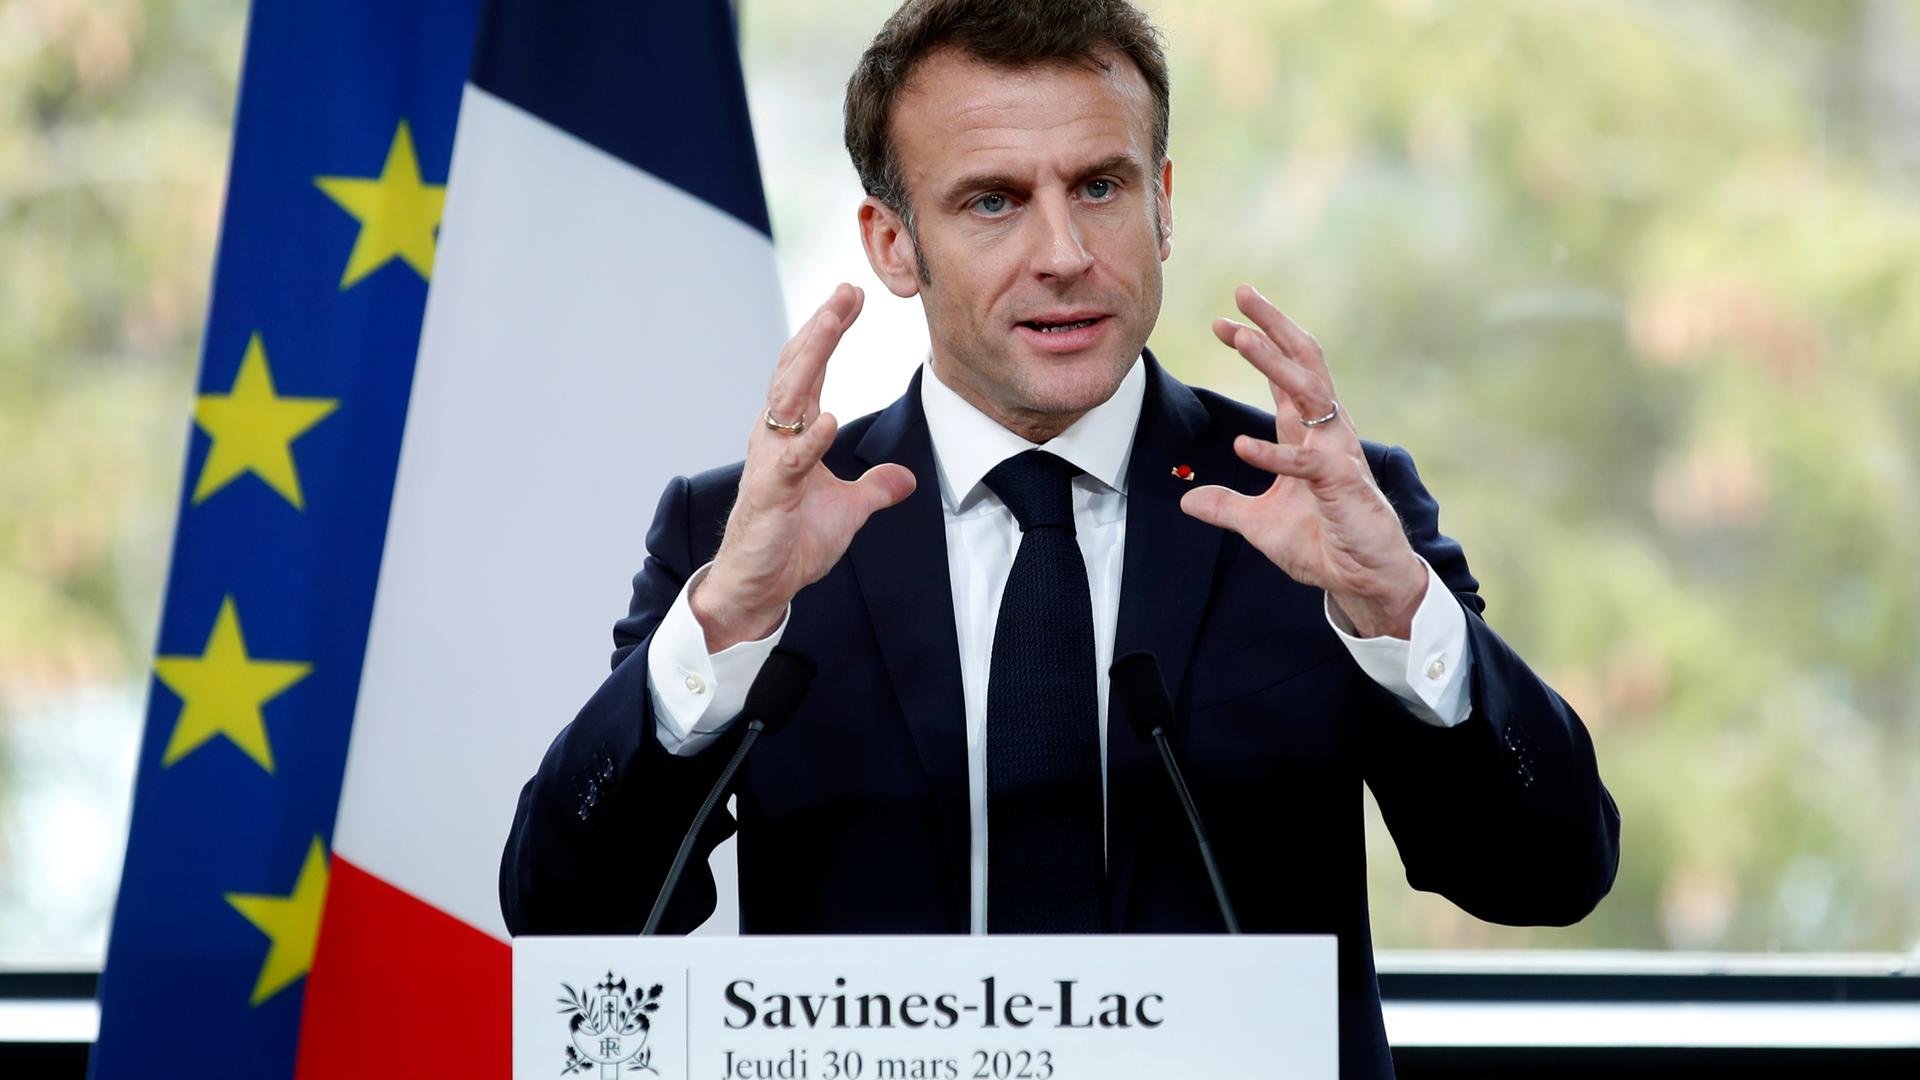 Der französische Präsident Macron steht hinter zwei Mikrofonen und hält gestikulierend eine Rede. Hinter ihm sind eine französische und eine EU-Flagge zu sehen.